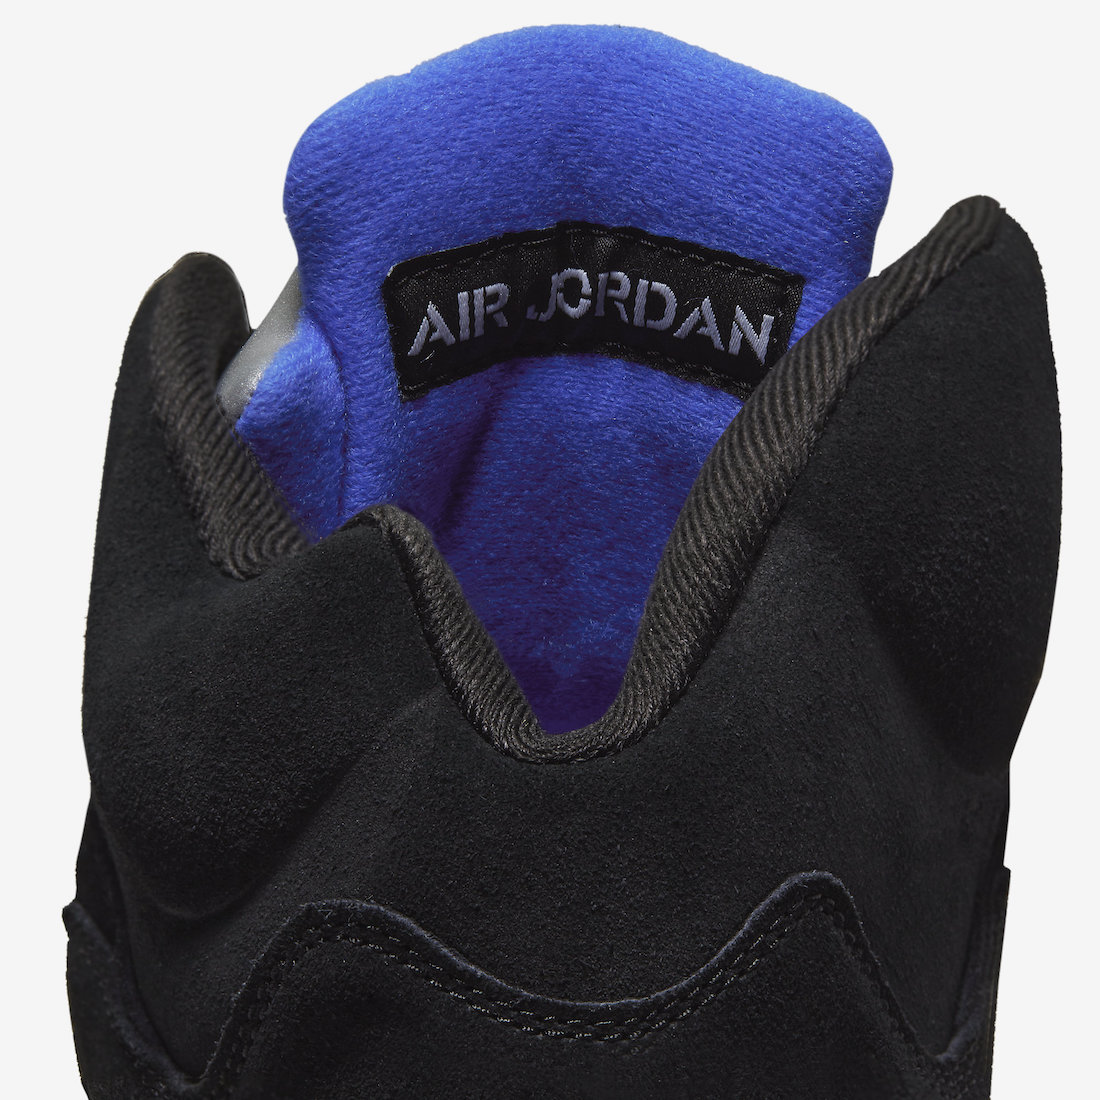 Air-Jordan-5-Racer-Blue-CT4838-004-Release-Date-Price-9